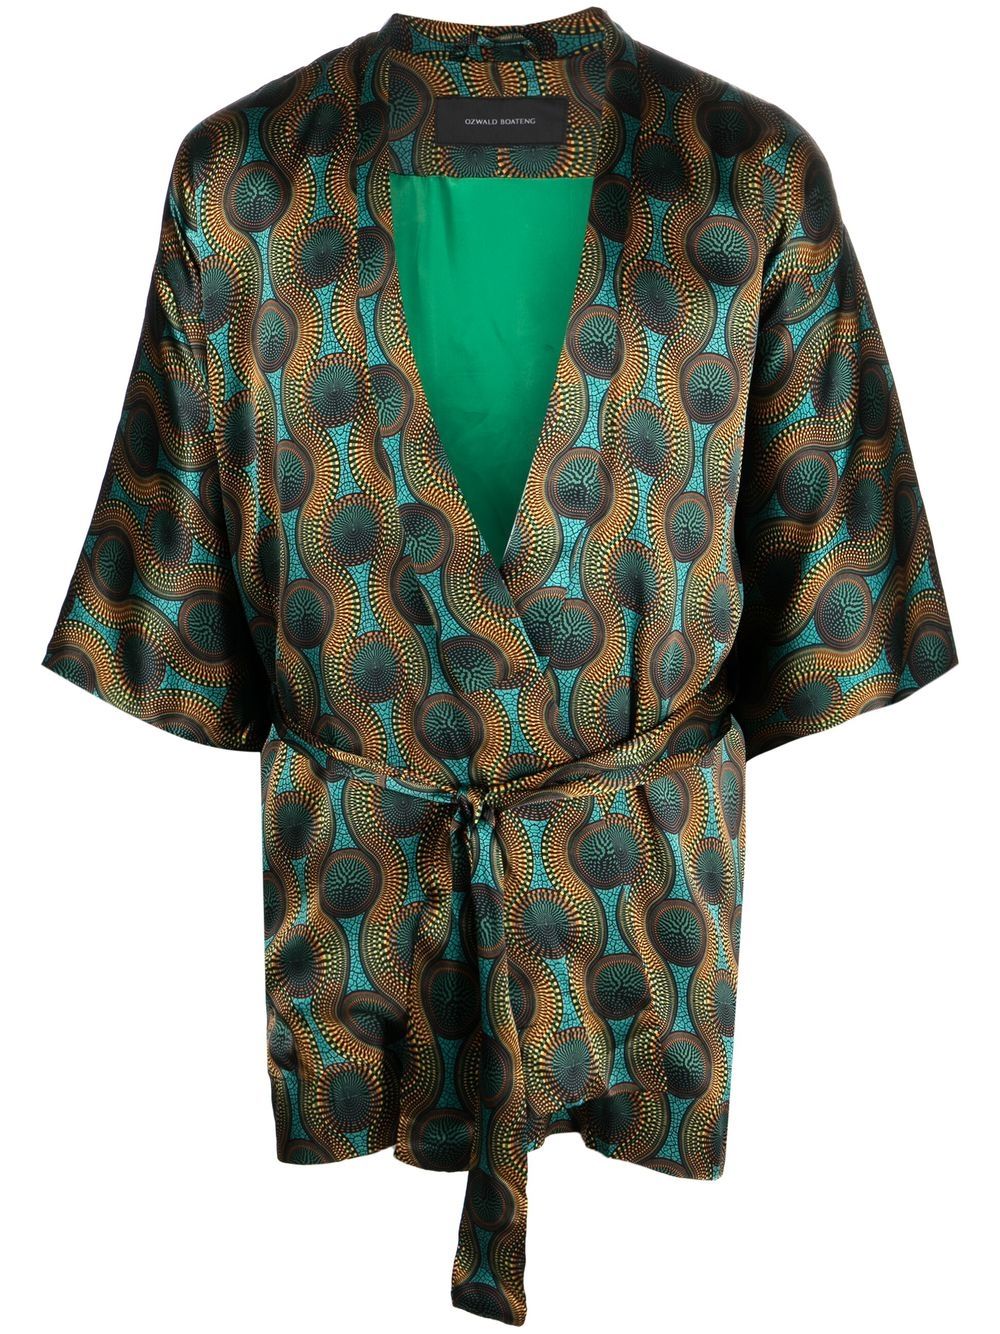 Ozwald boateng OZWALD BOATENG- Printed Silk Short Kimono